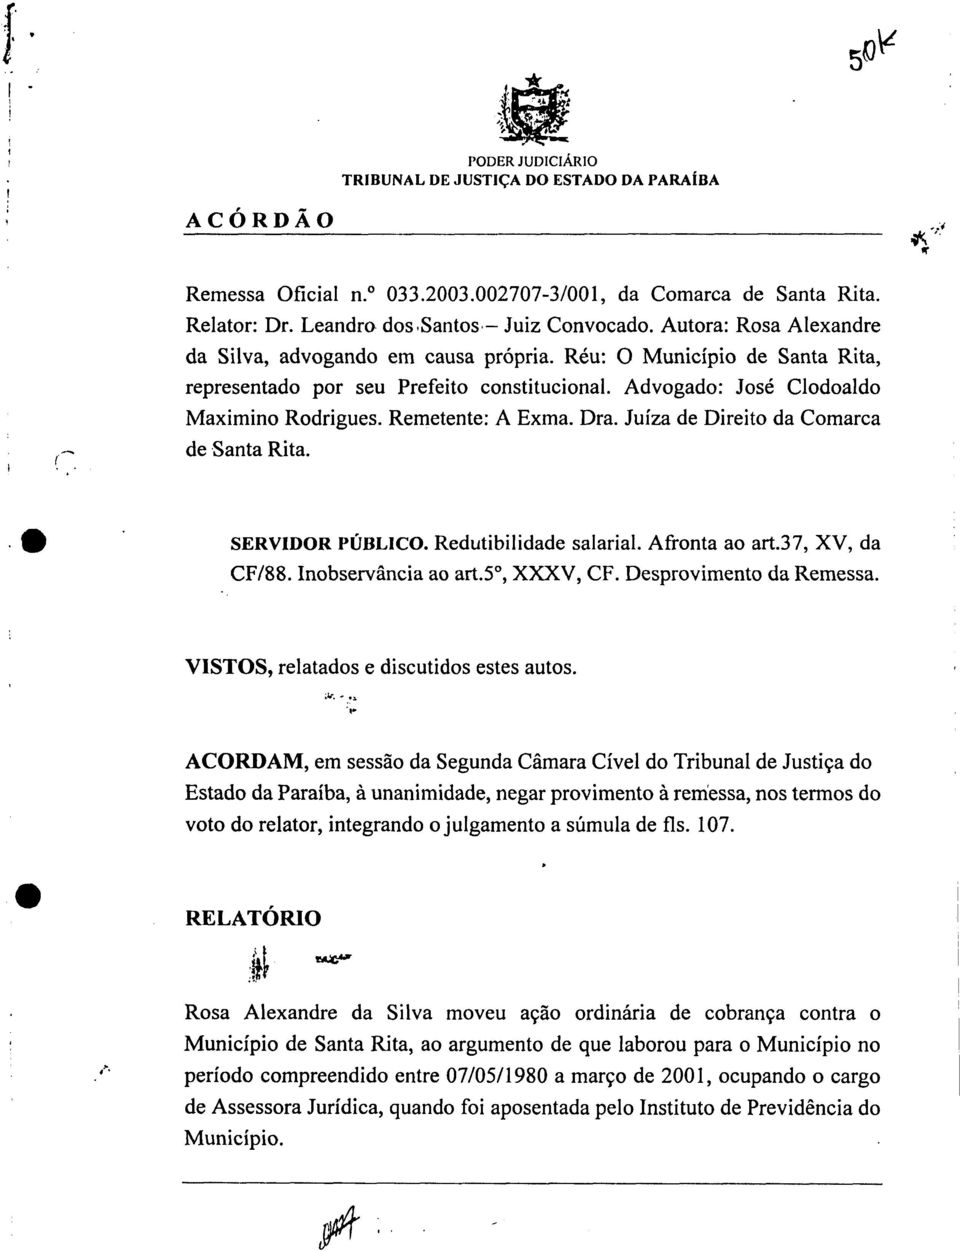 Advogado: José Clodoaldo Maximino Rodrigues. Remetente: A Exma. Dra. Juíza de Direito da Comarca de Santa Rita. 111 SERVIDOR PÚBLICO. Redutibilidade salarial. Afronta ao art.37, XV, da CF/88.